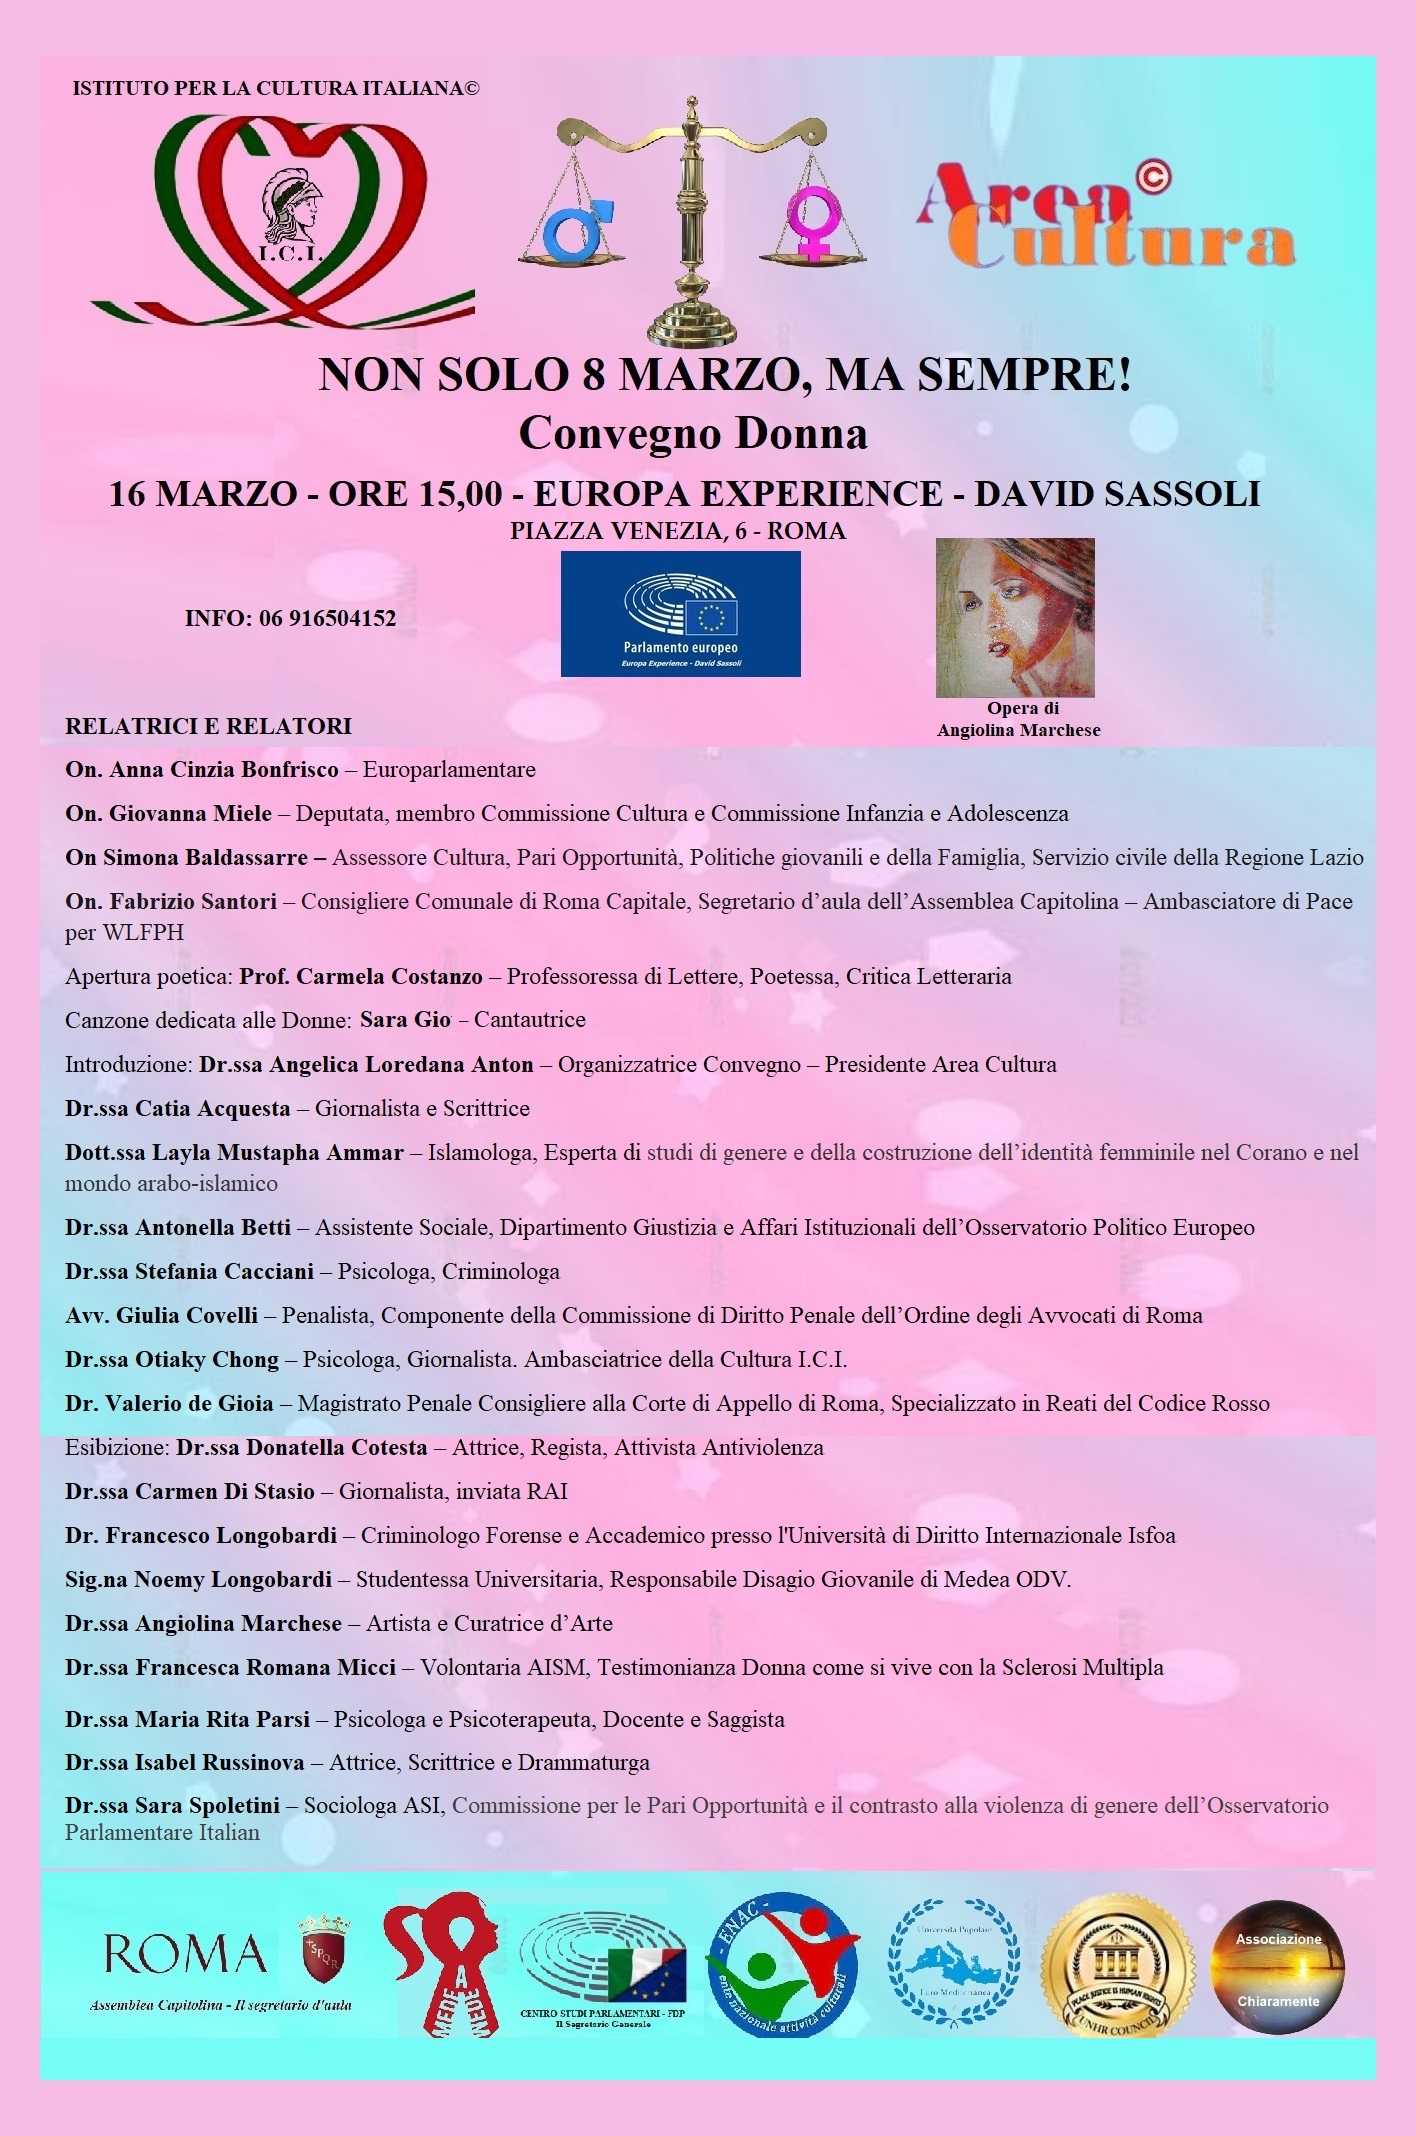 “Non solo 8 marzo, ma sempre” convegno donna, il 16 marzo, organizzato da Area Cultura e I.C.I. a Roma presso il Parlamento Europeo